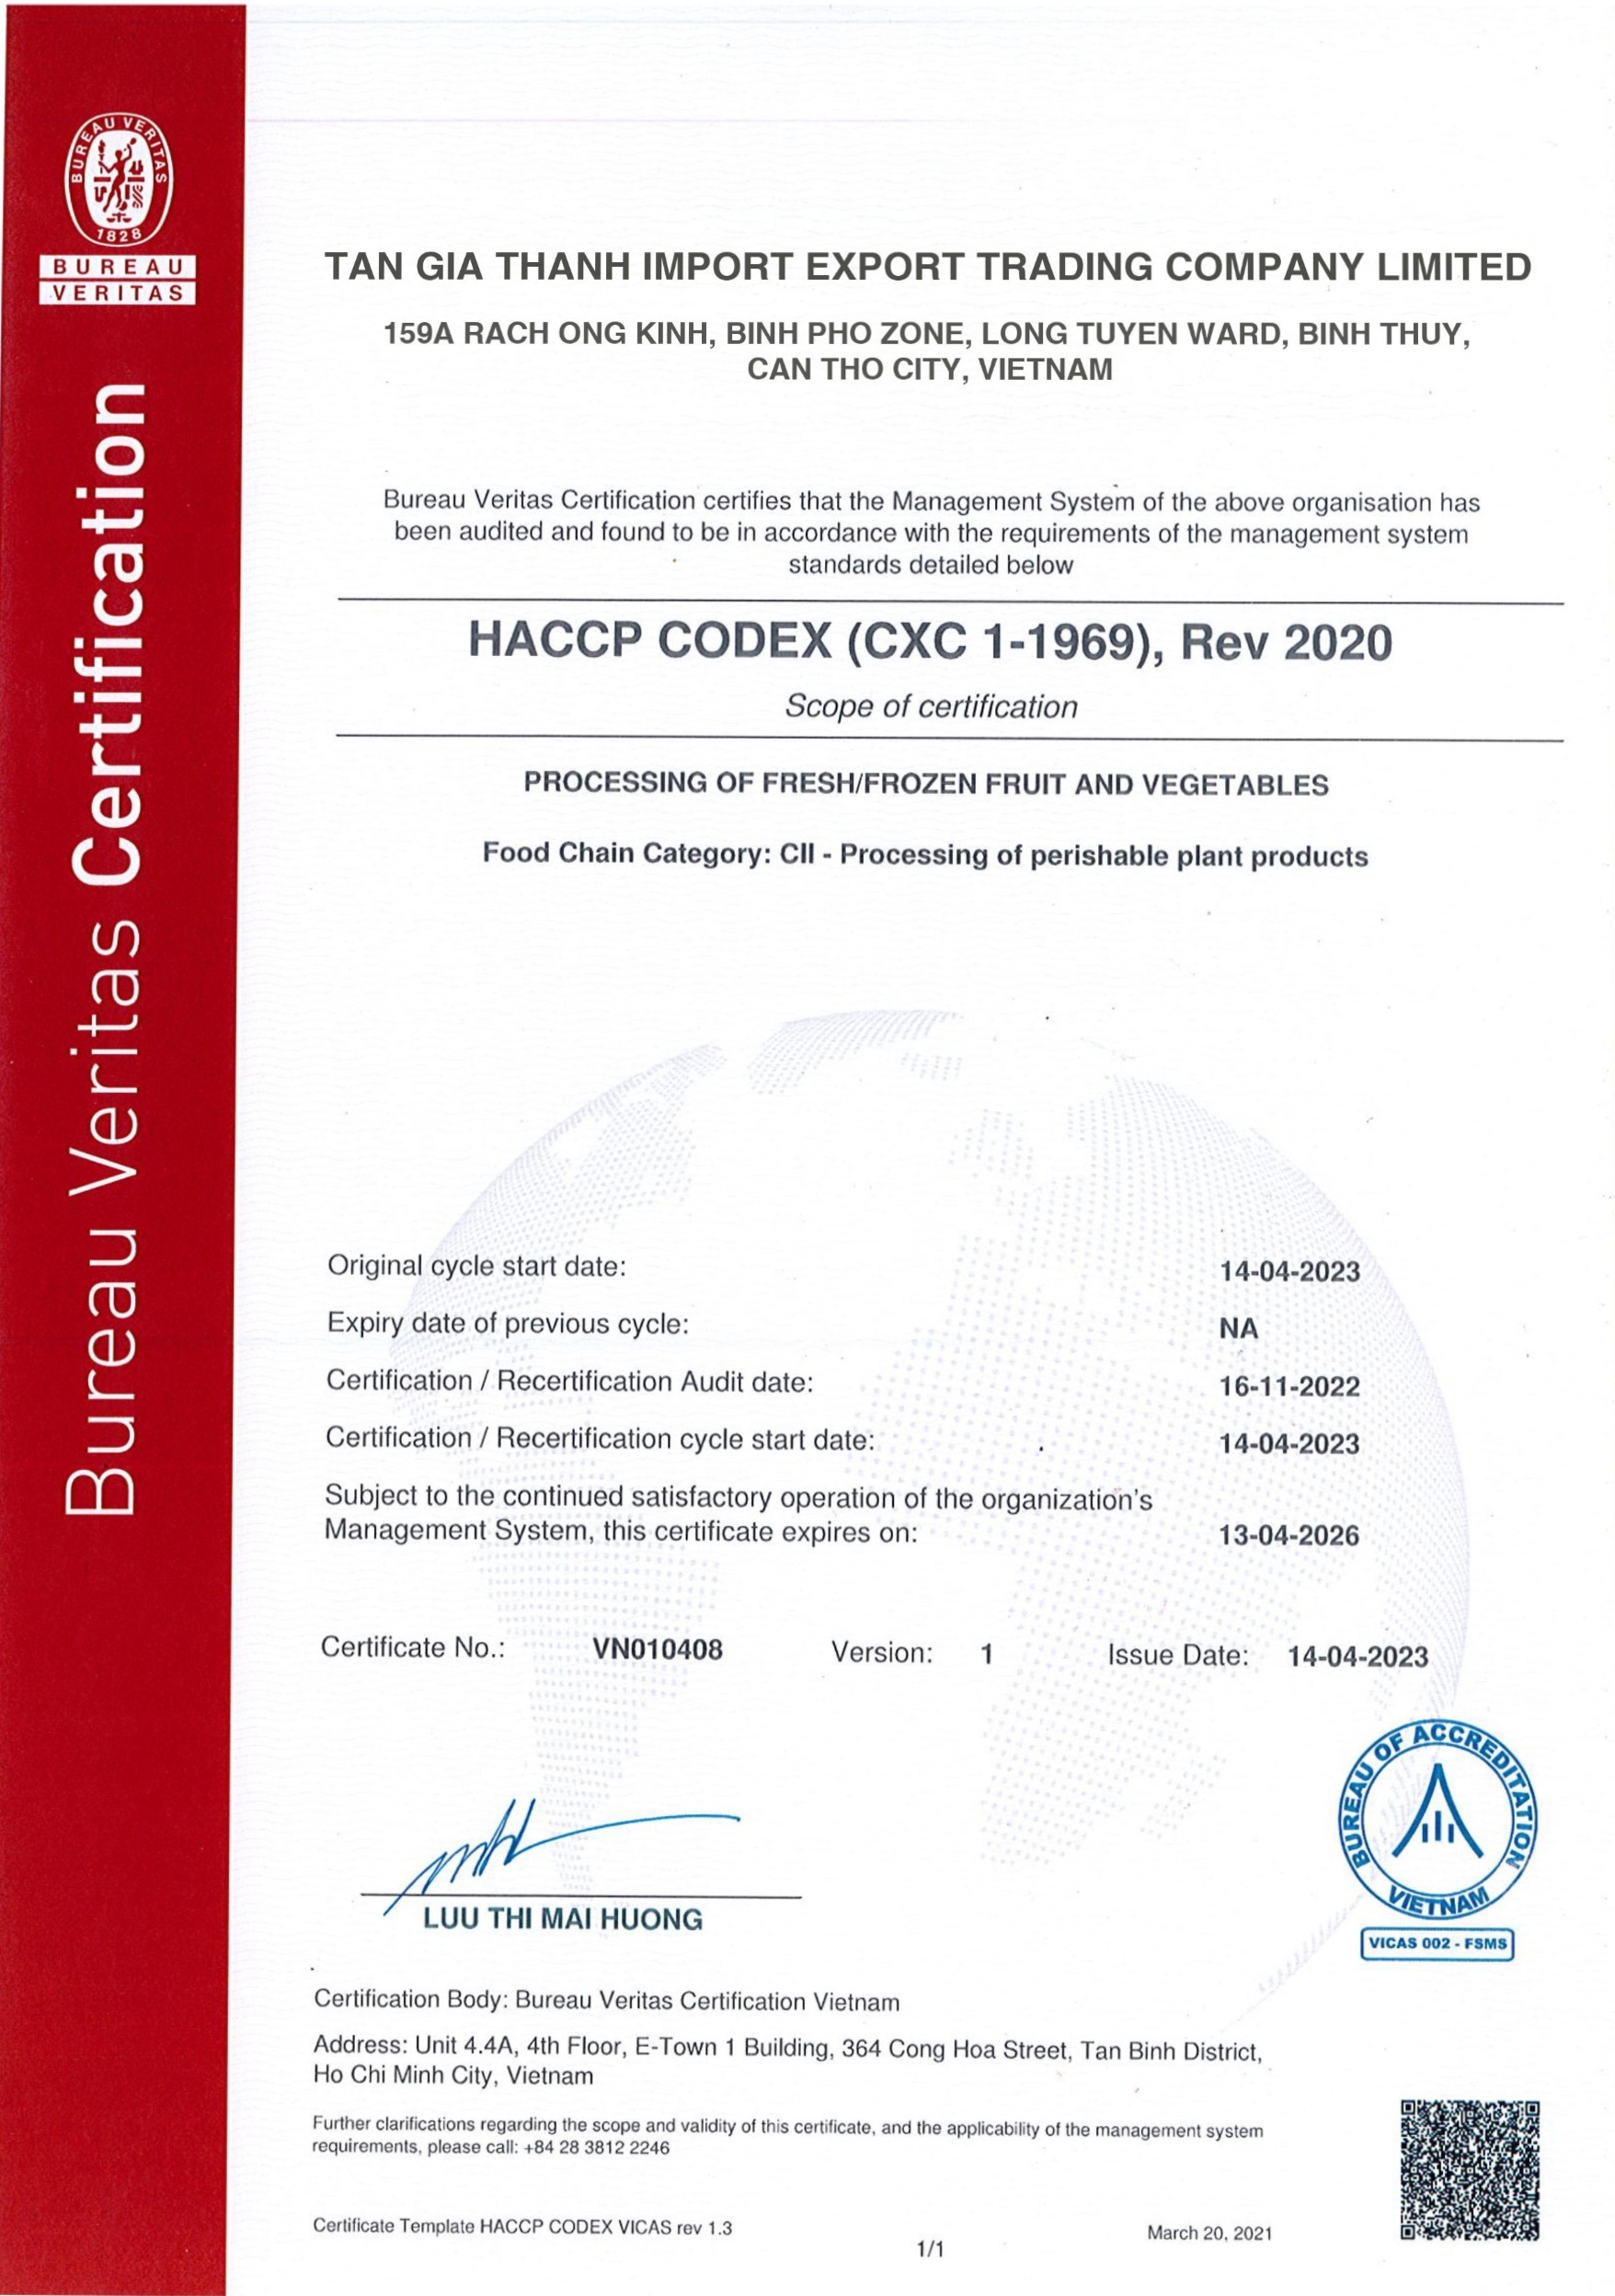 Chứng nhận HACCP của Tân Gia Thành